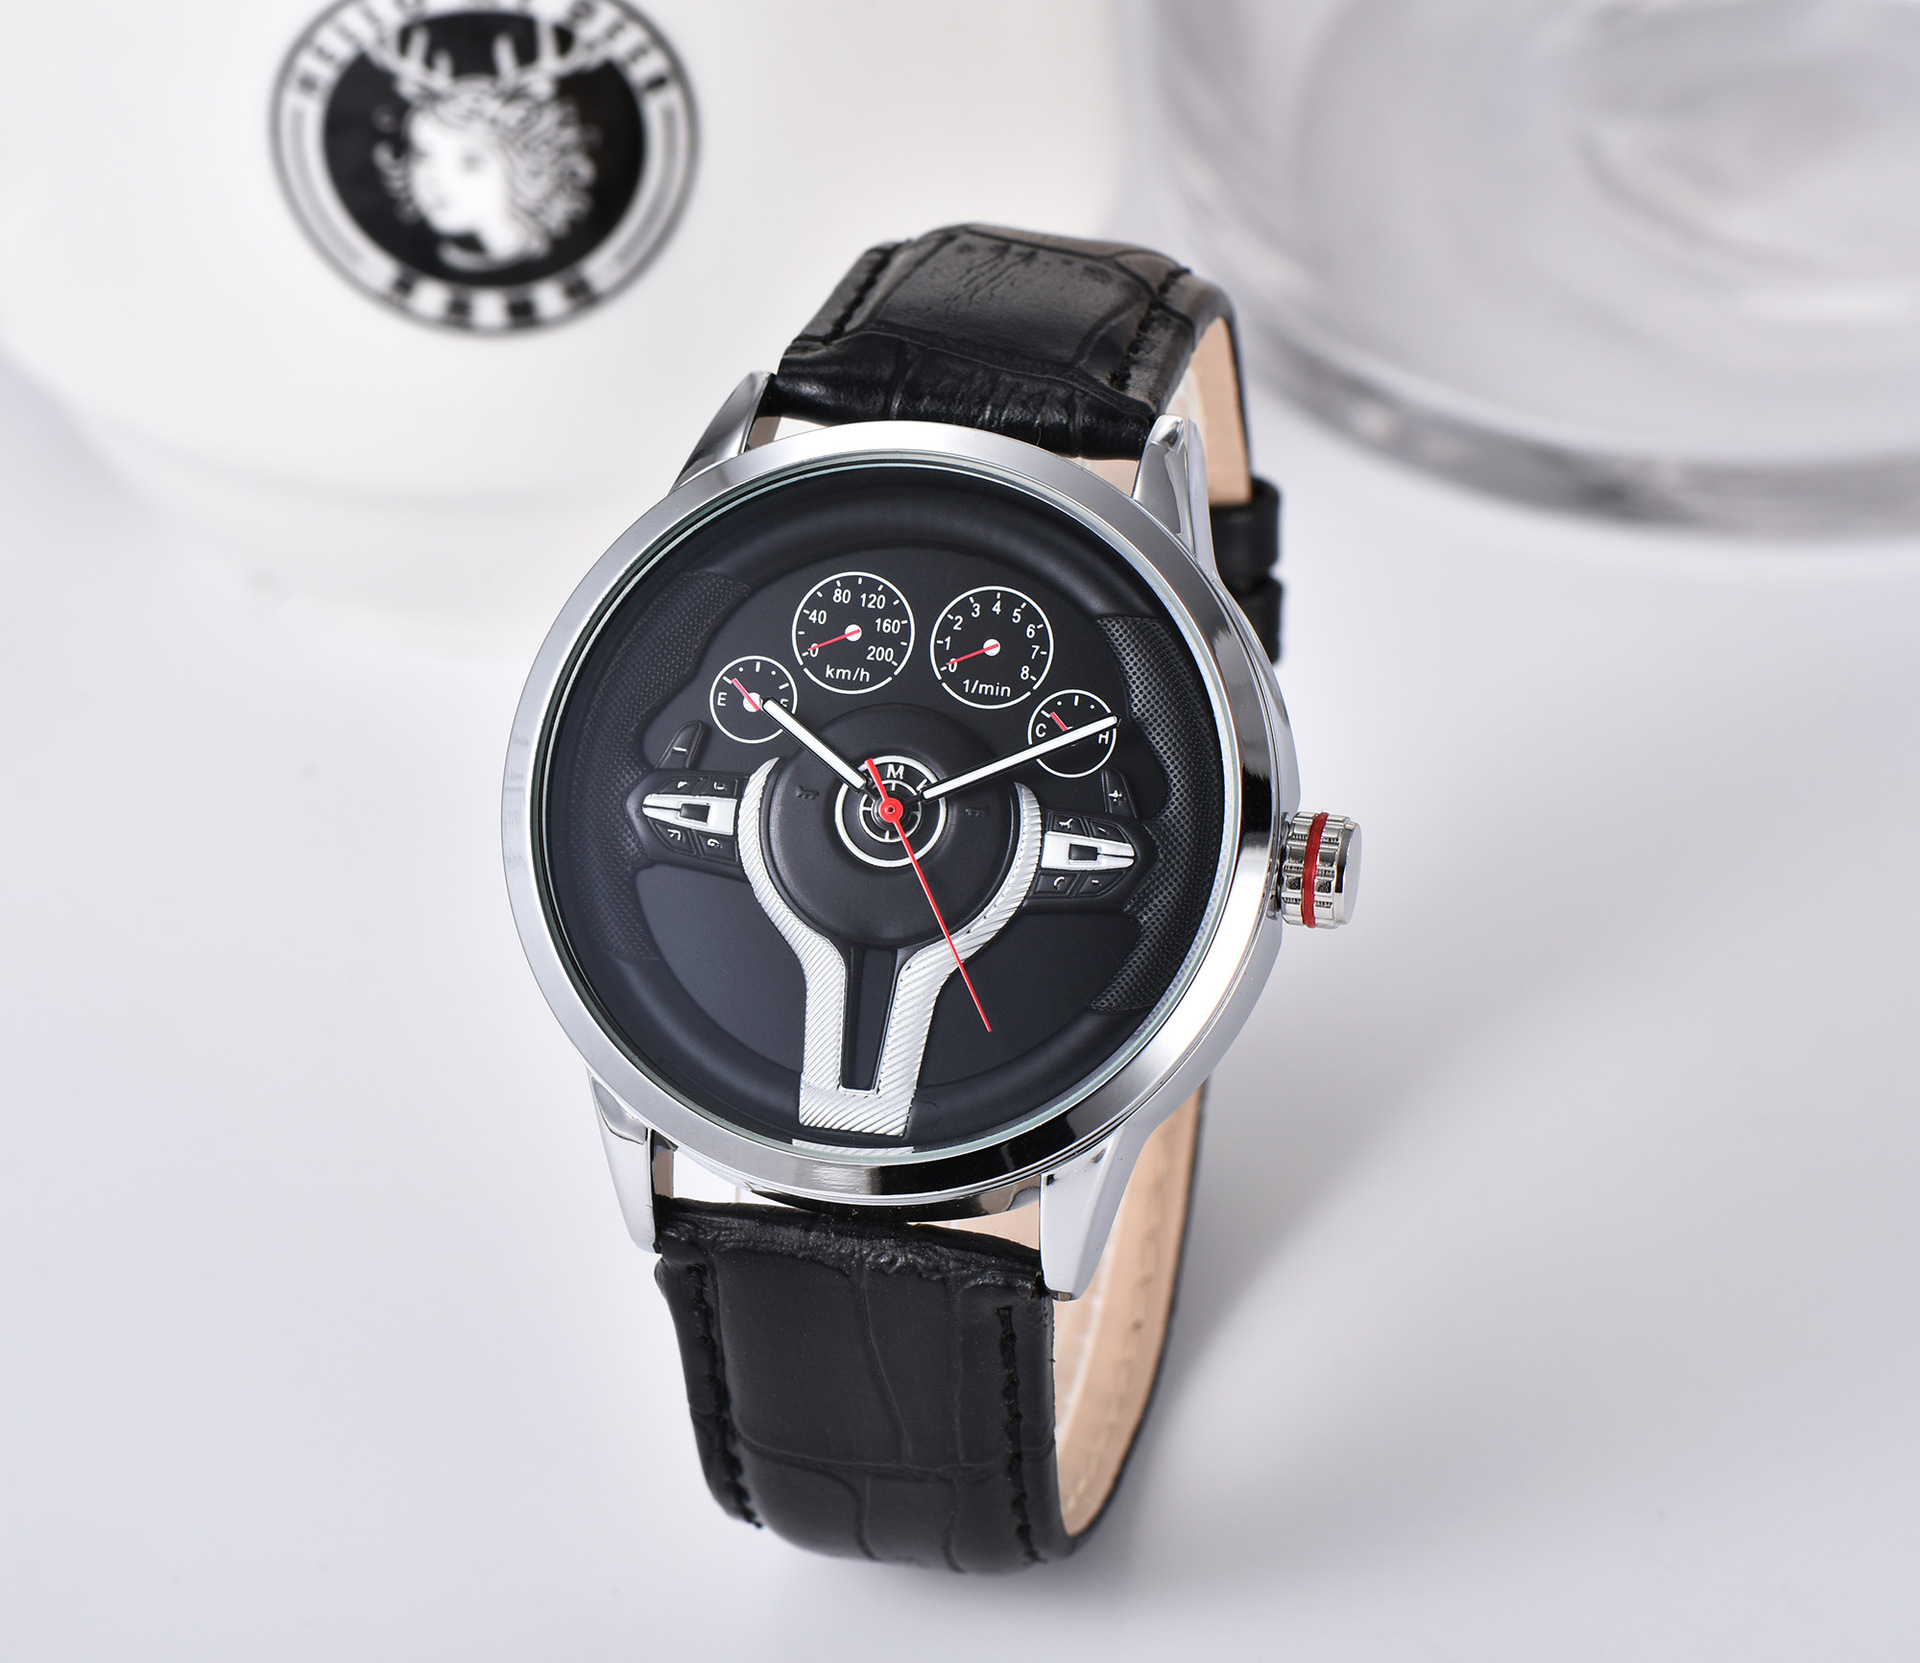 Đồng hồ nam dây da phong cách siêu xe BMW, chống nước chống xước tuyệt đốI  - mẫu đồng hồ nam giá rẻ được ưa chuộng nhất hiện nay - Đồng hồ